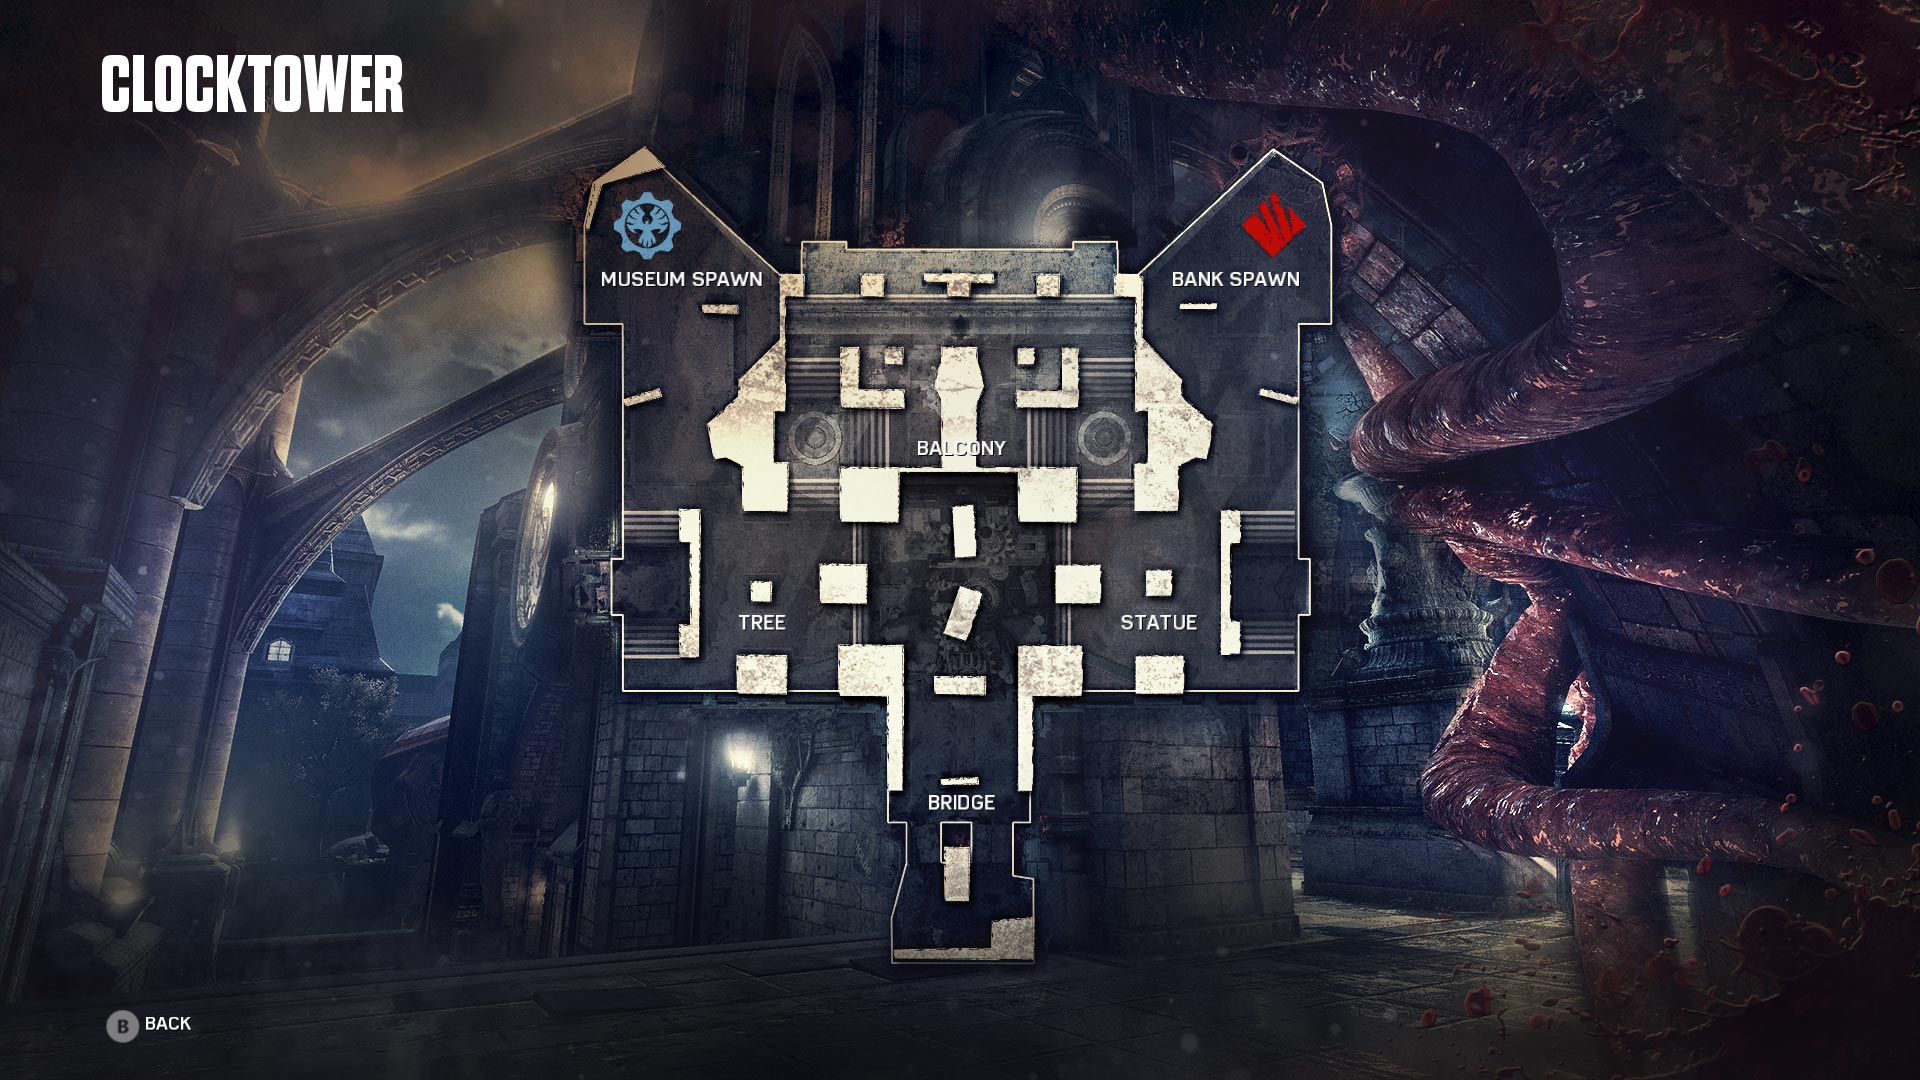 Gears of War 4 Clocktower Multiplayer Map